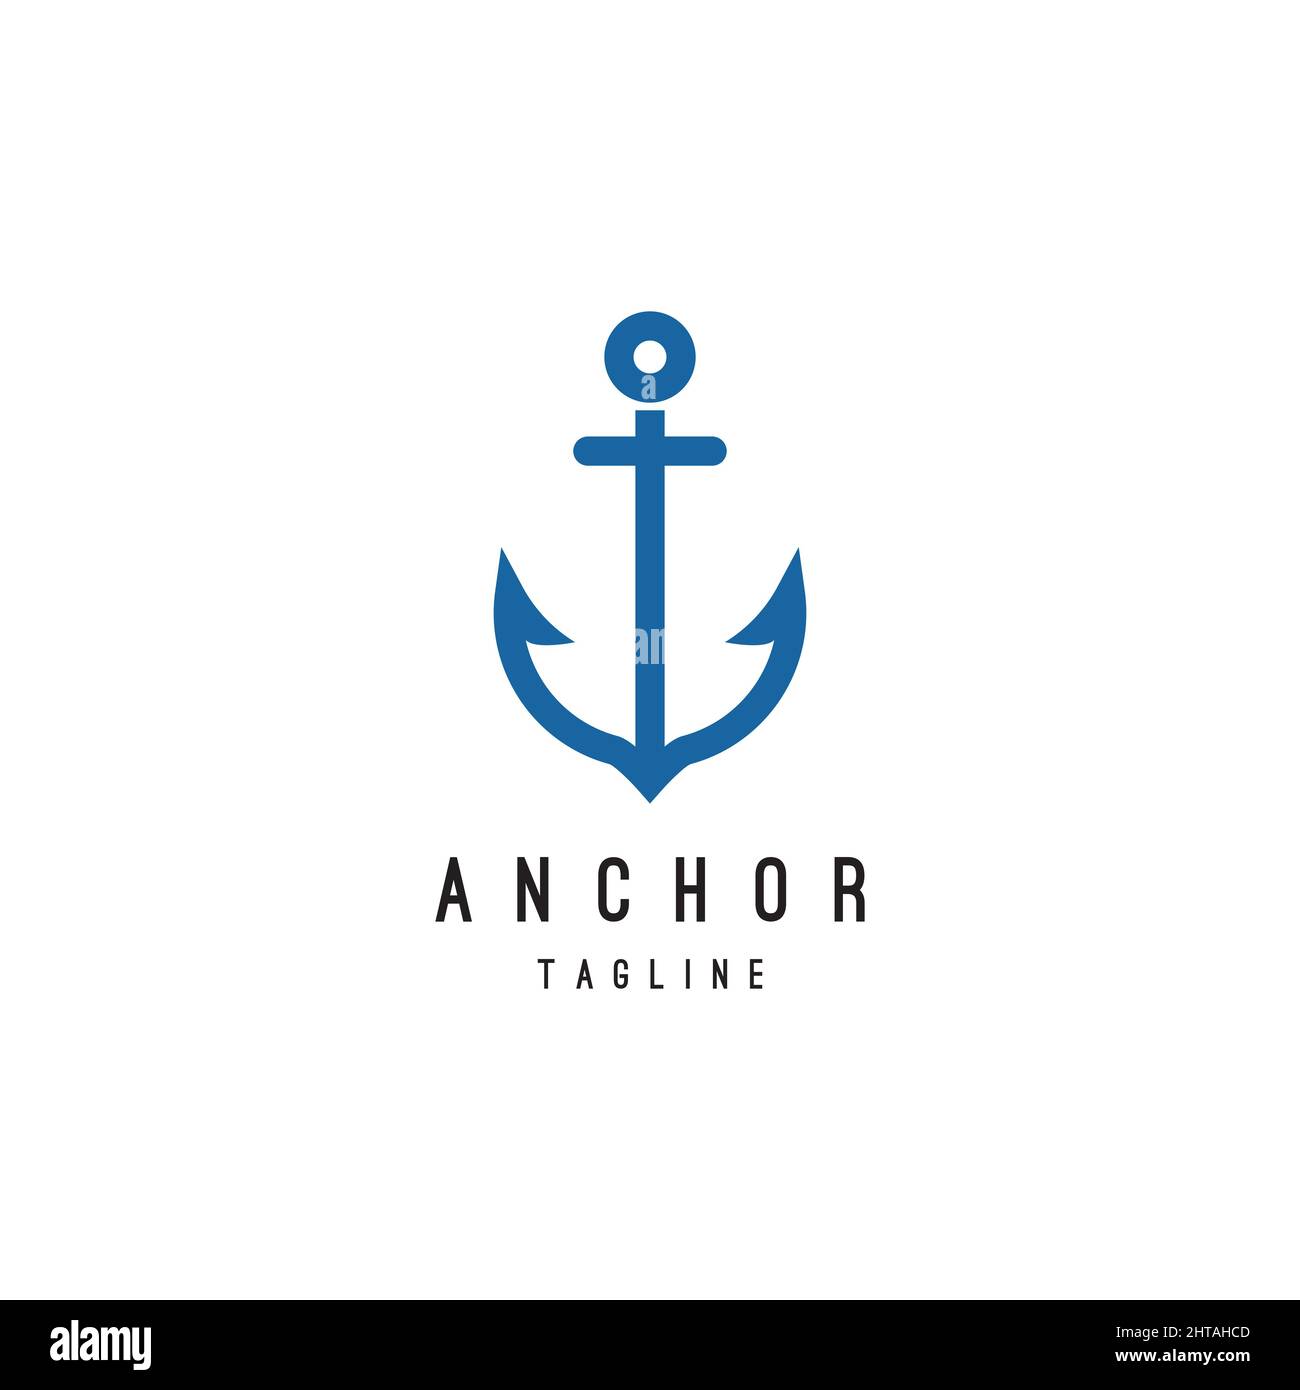 Anchor logo design inspiration vector template Stock Vector